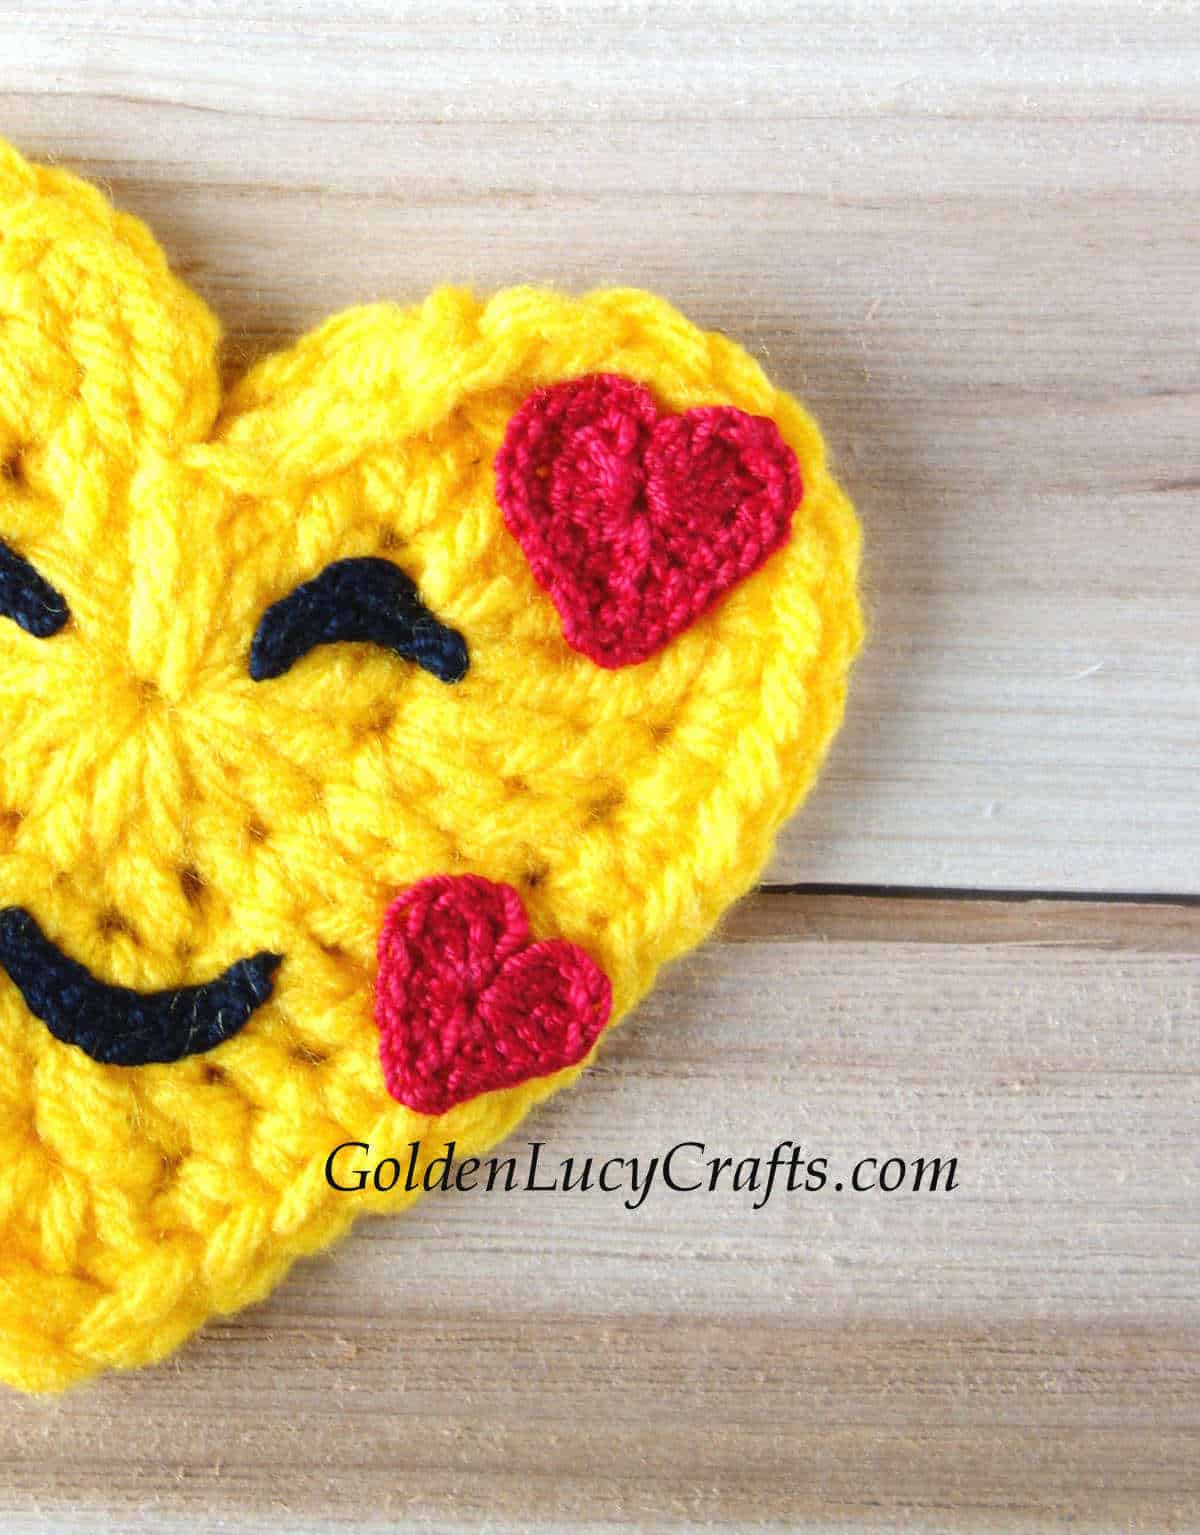 Crochet emoji close up picture.